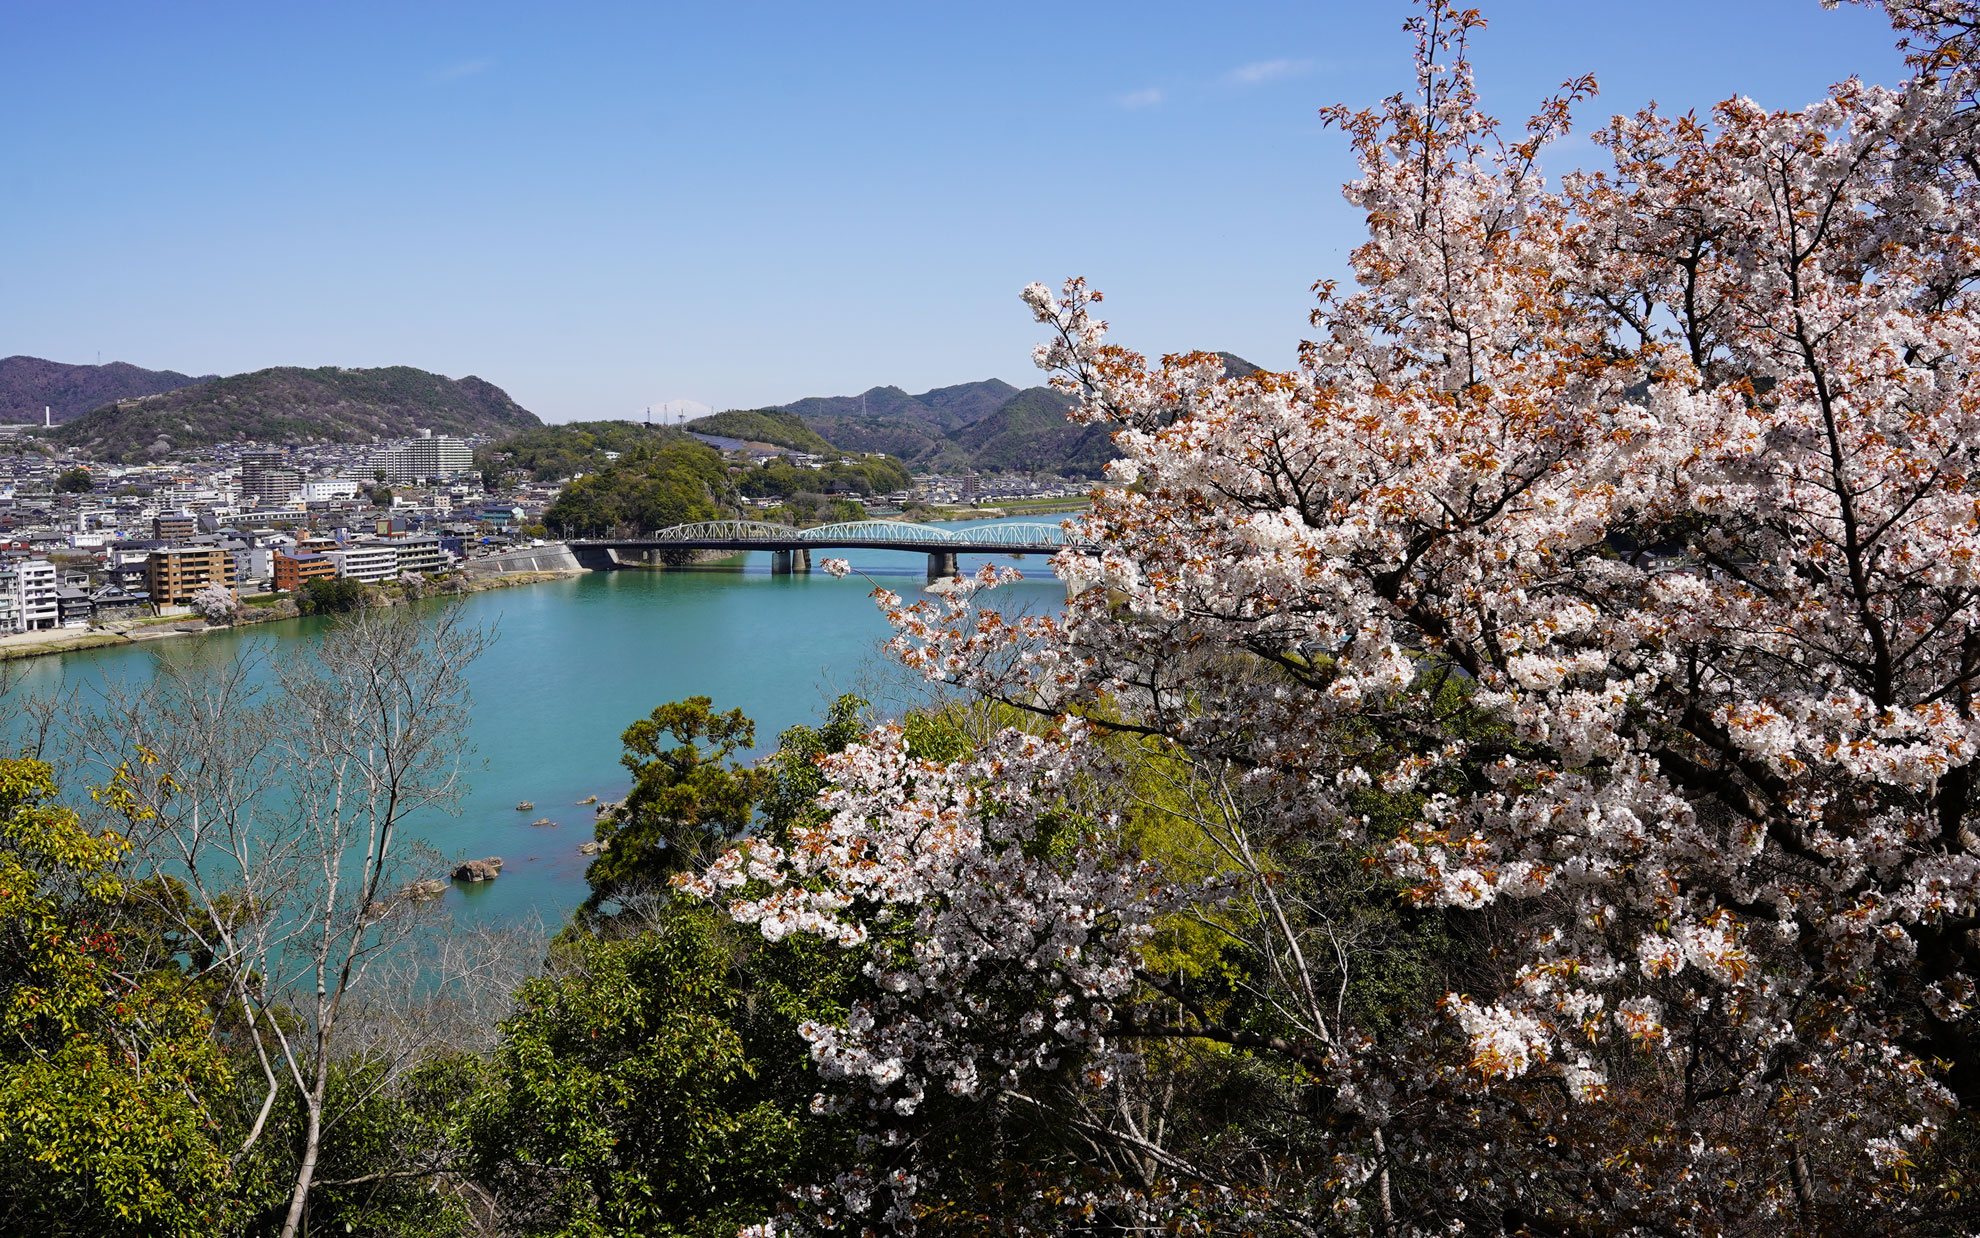 木曽川と桜が綺麗。昔からの眺めなのかな。